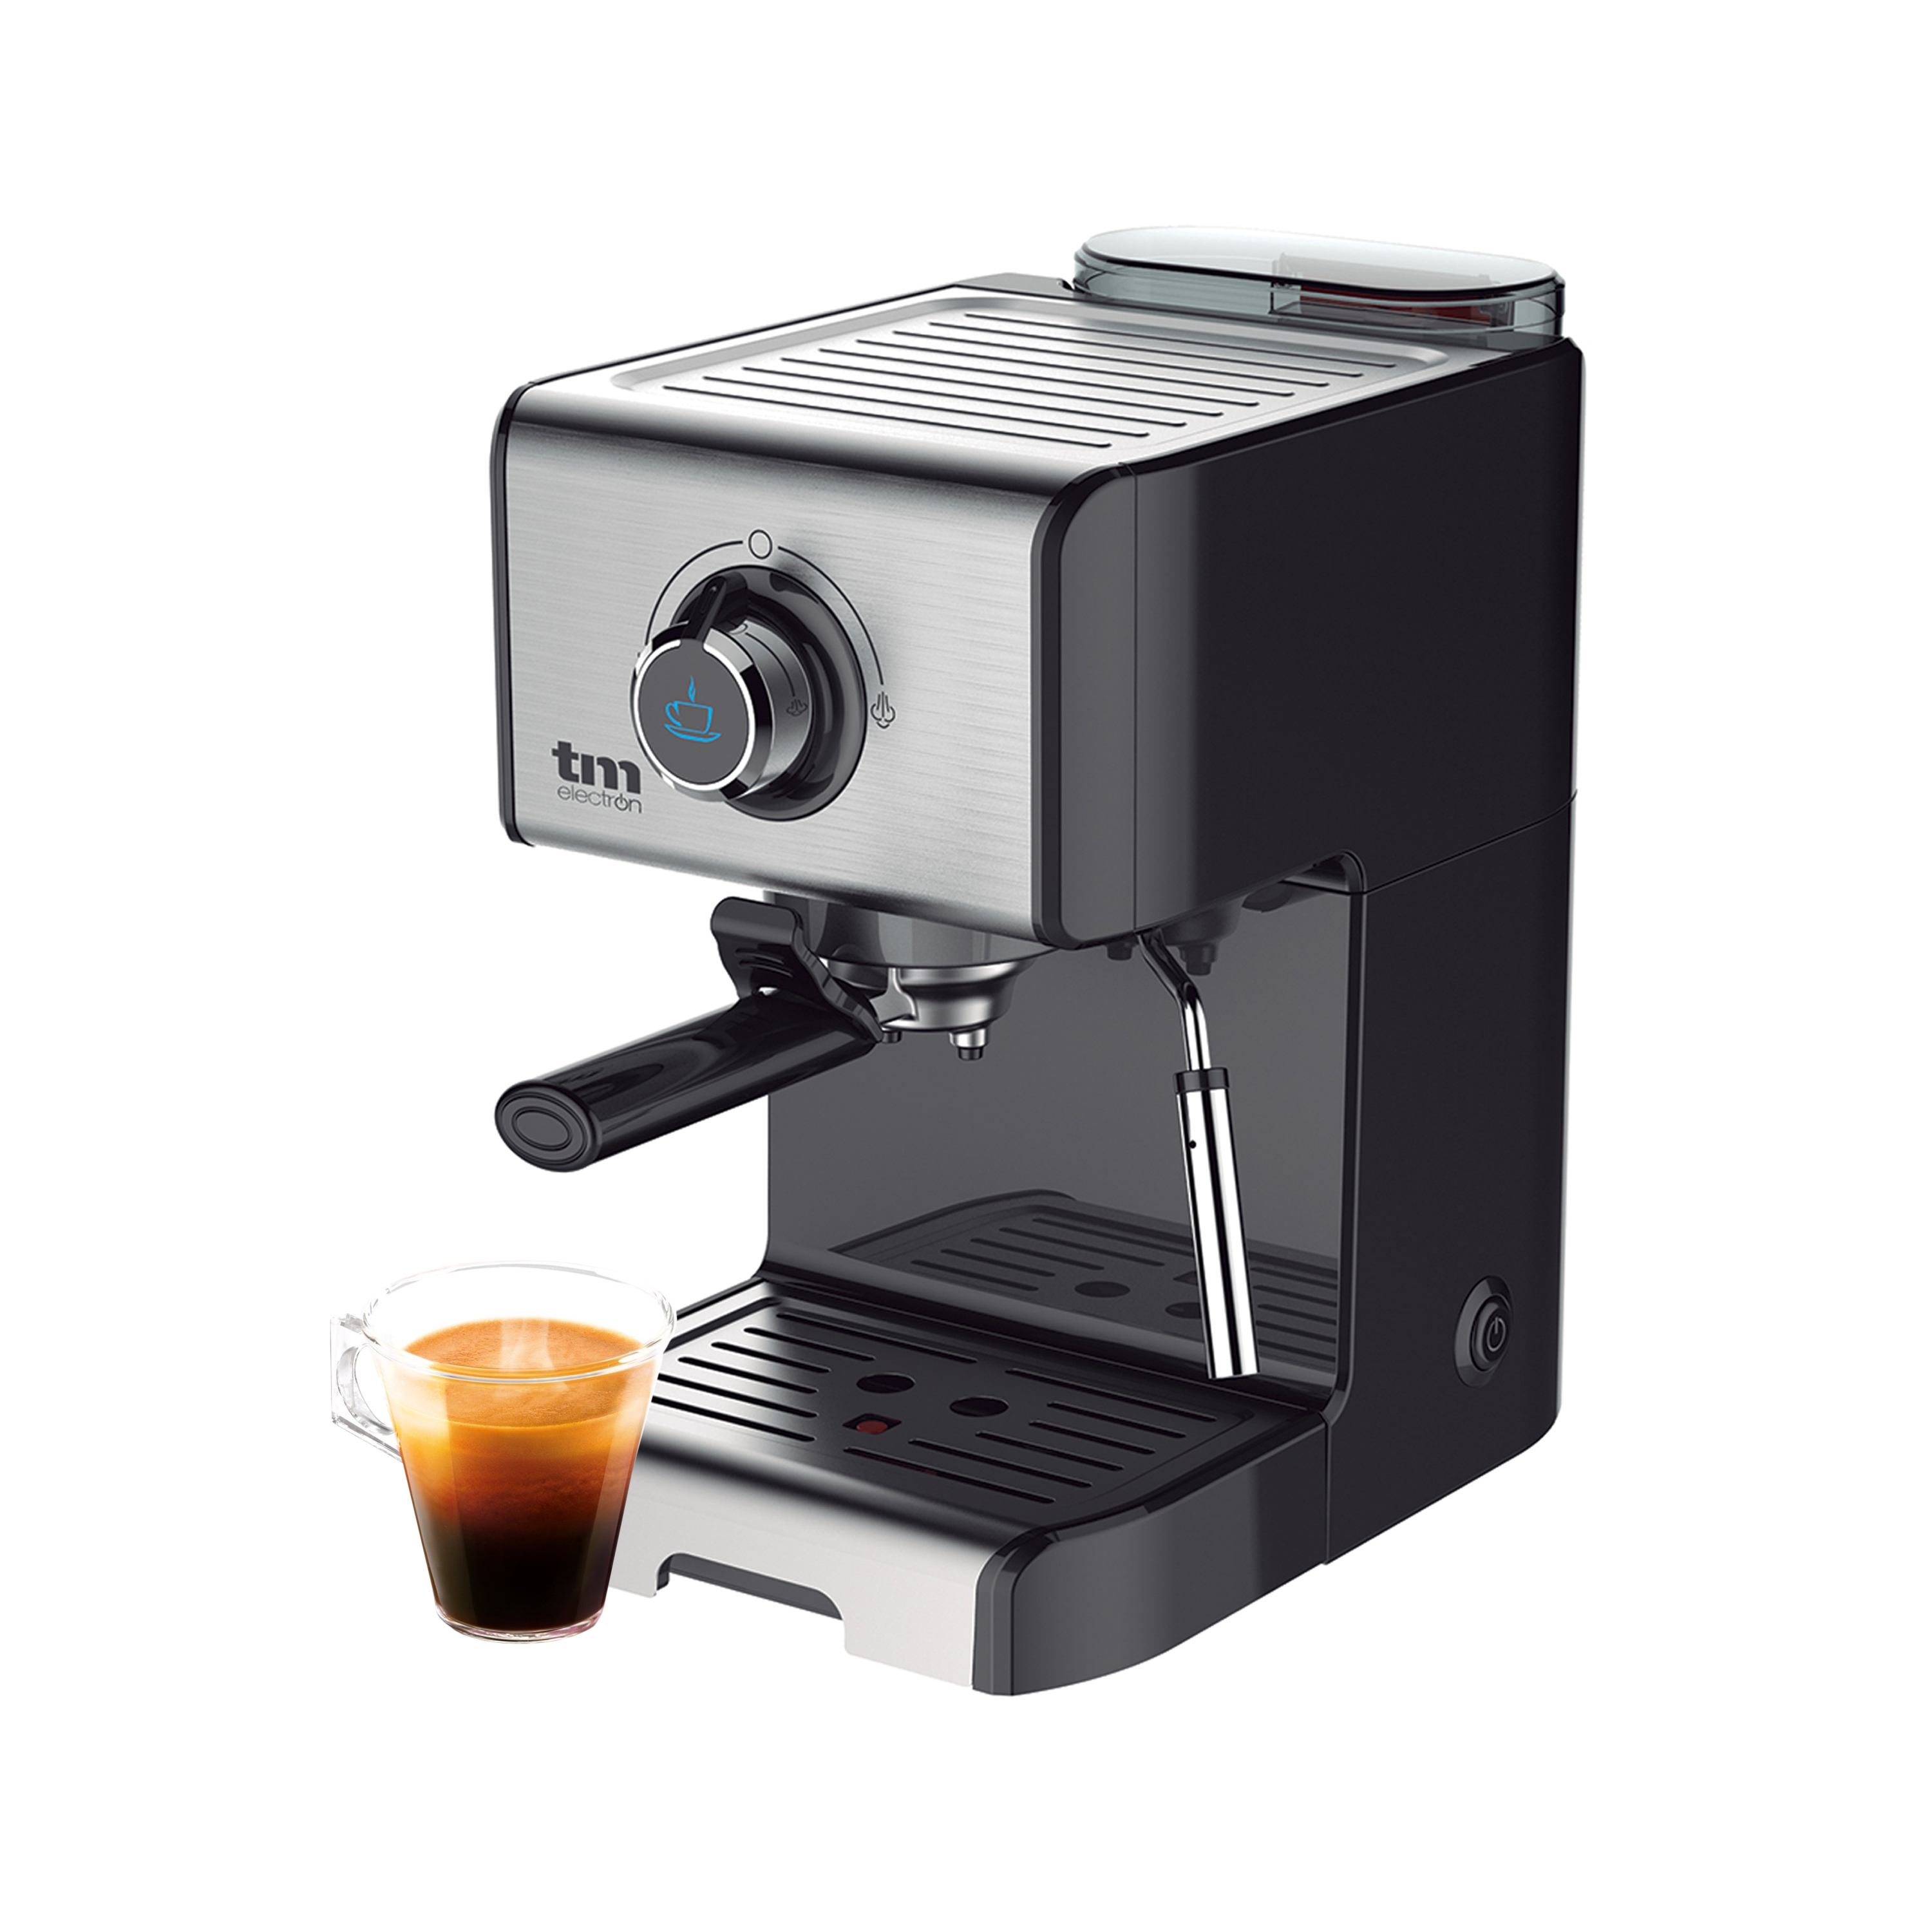 Mixpresso Cafetera de 9 tazas, cafetera espresso para estufa, cafetera Moka  con diseño de cafetera de café percolador, cafetera espresso de acero